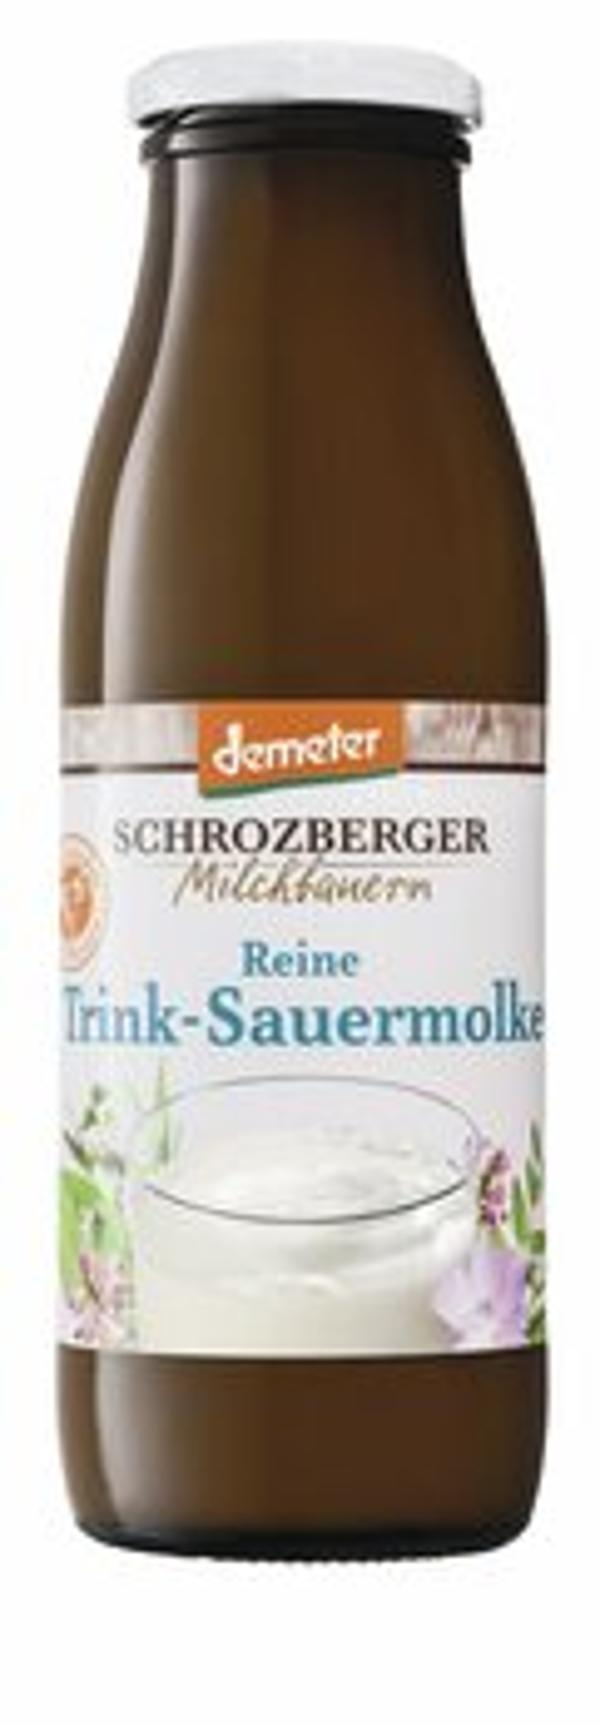 Produktfoto zu Demeter reine Sauermolke (Flasche) 0,5l